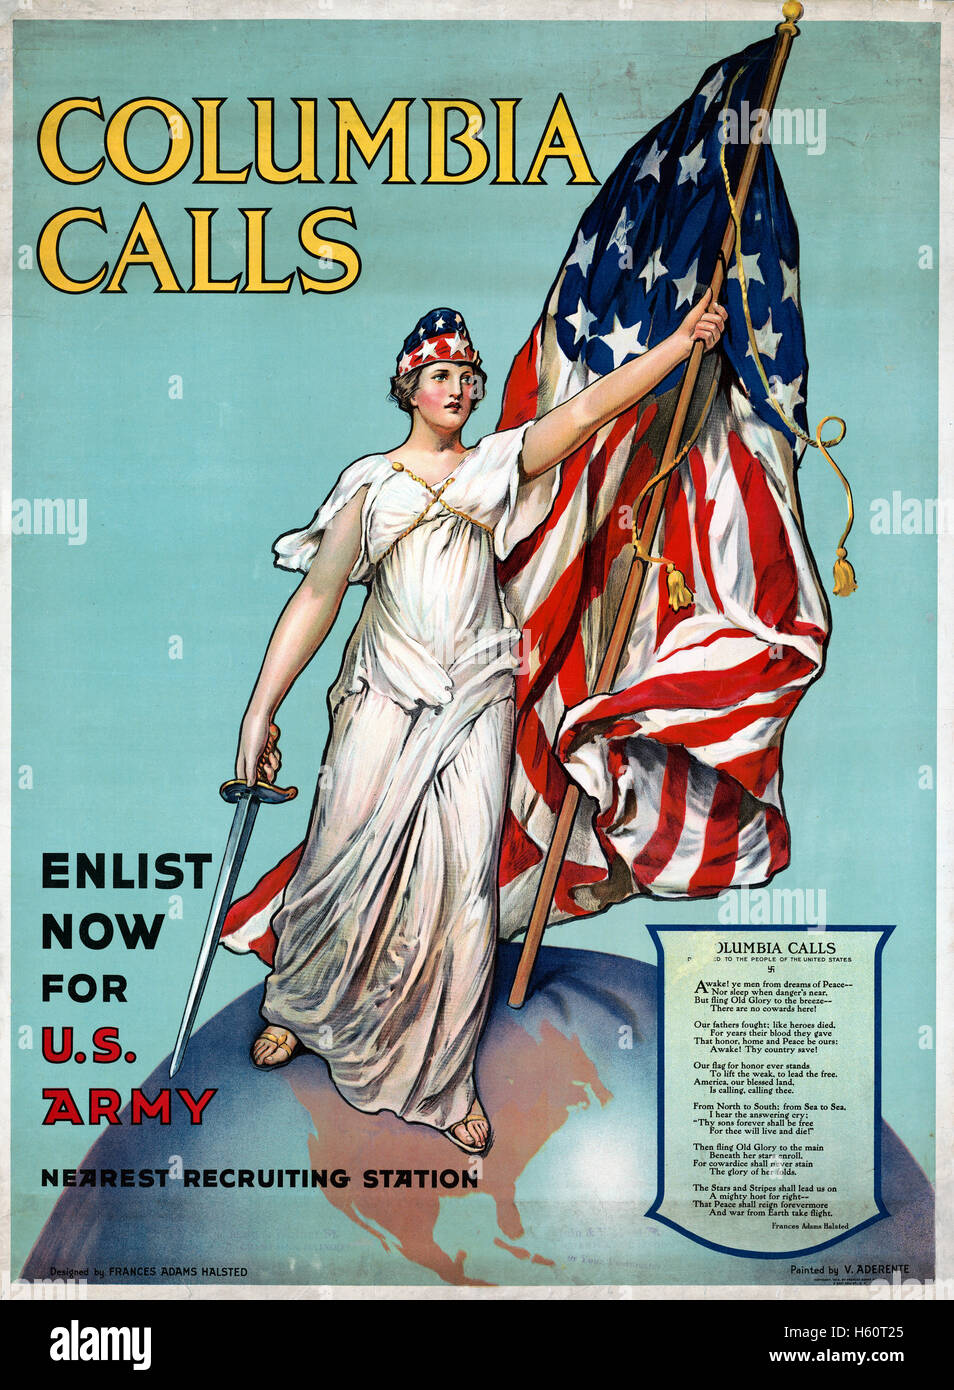 Columbia ruft an, melden Sie sich jetzt für die USA an Armee, USA Poster zur Rekrutierung der Armee während des 1. Weltkriegs, entworfen von Frances Adams Halsted aus einem Gemälde von Vincent Aderente, 1916 Stockfoto